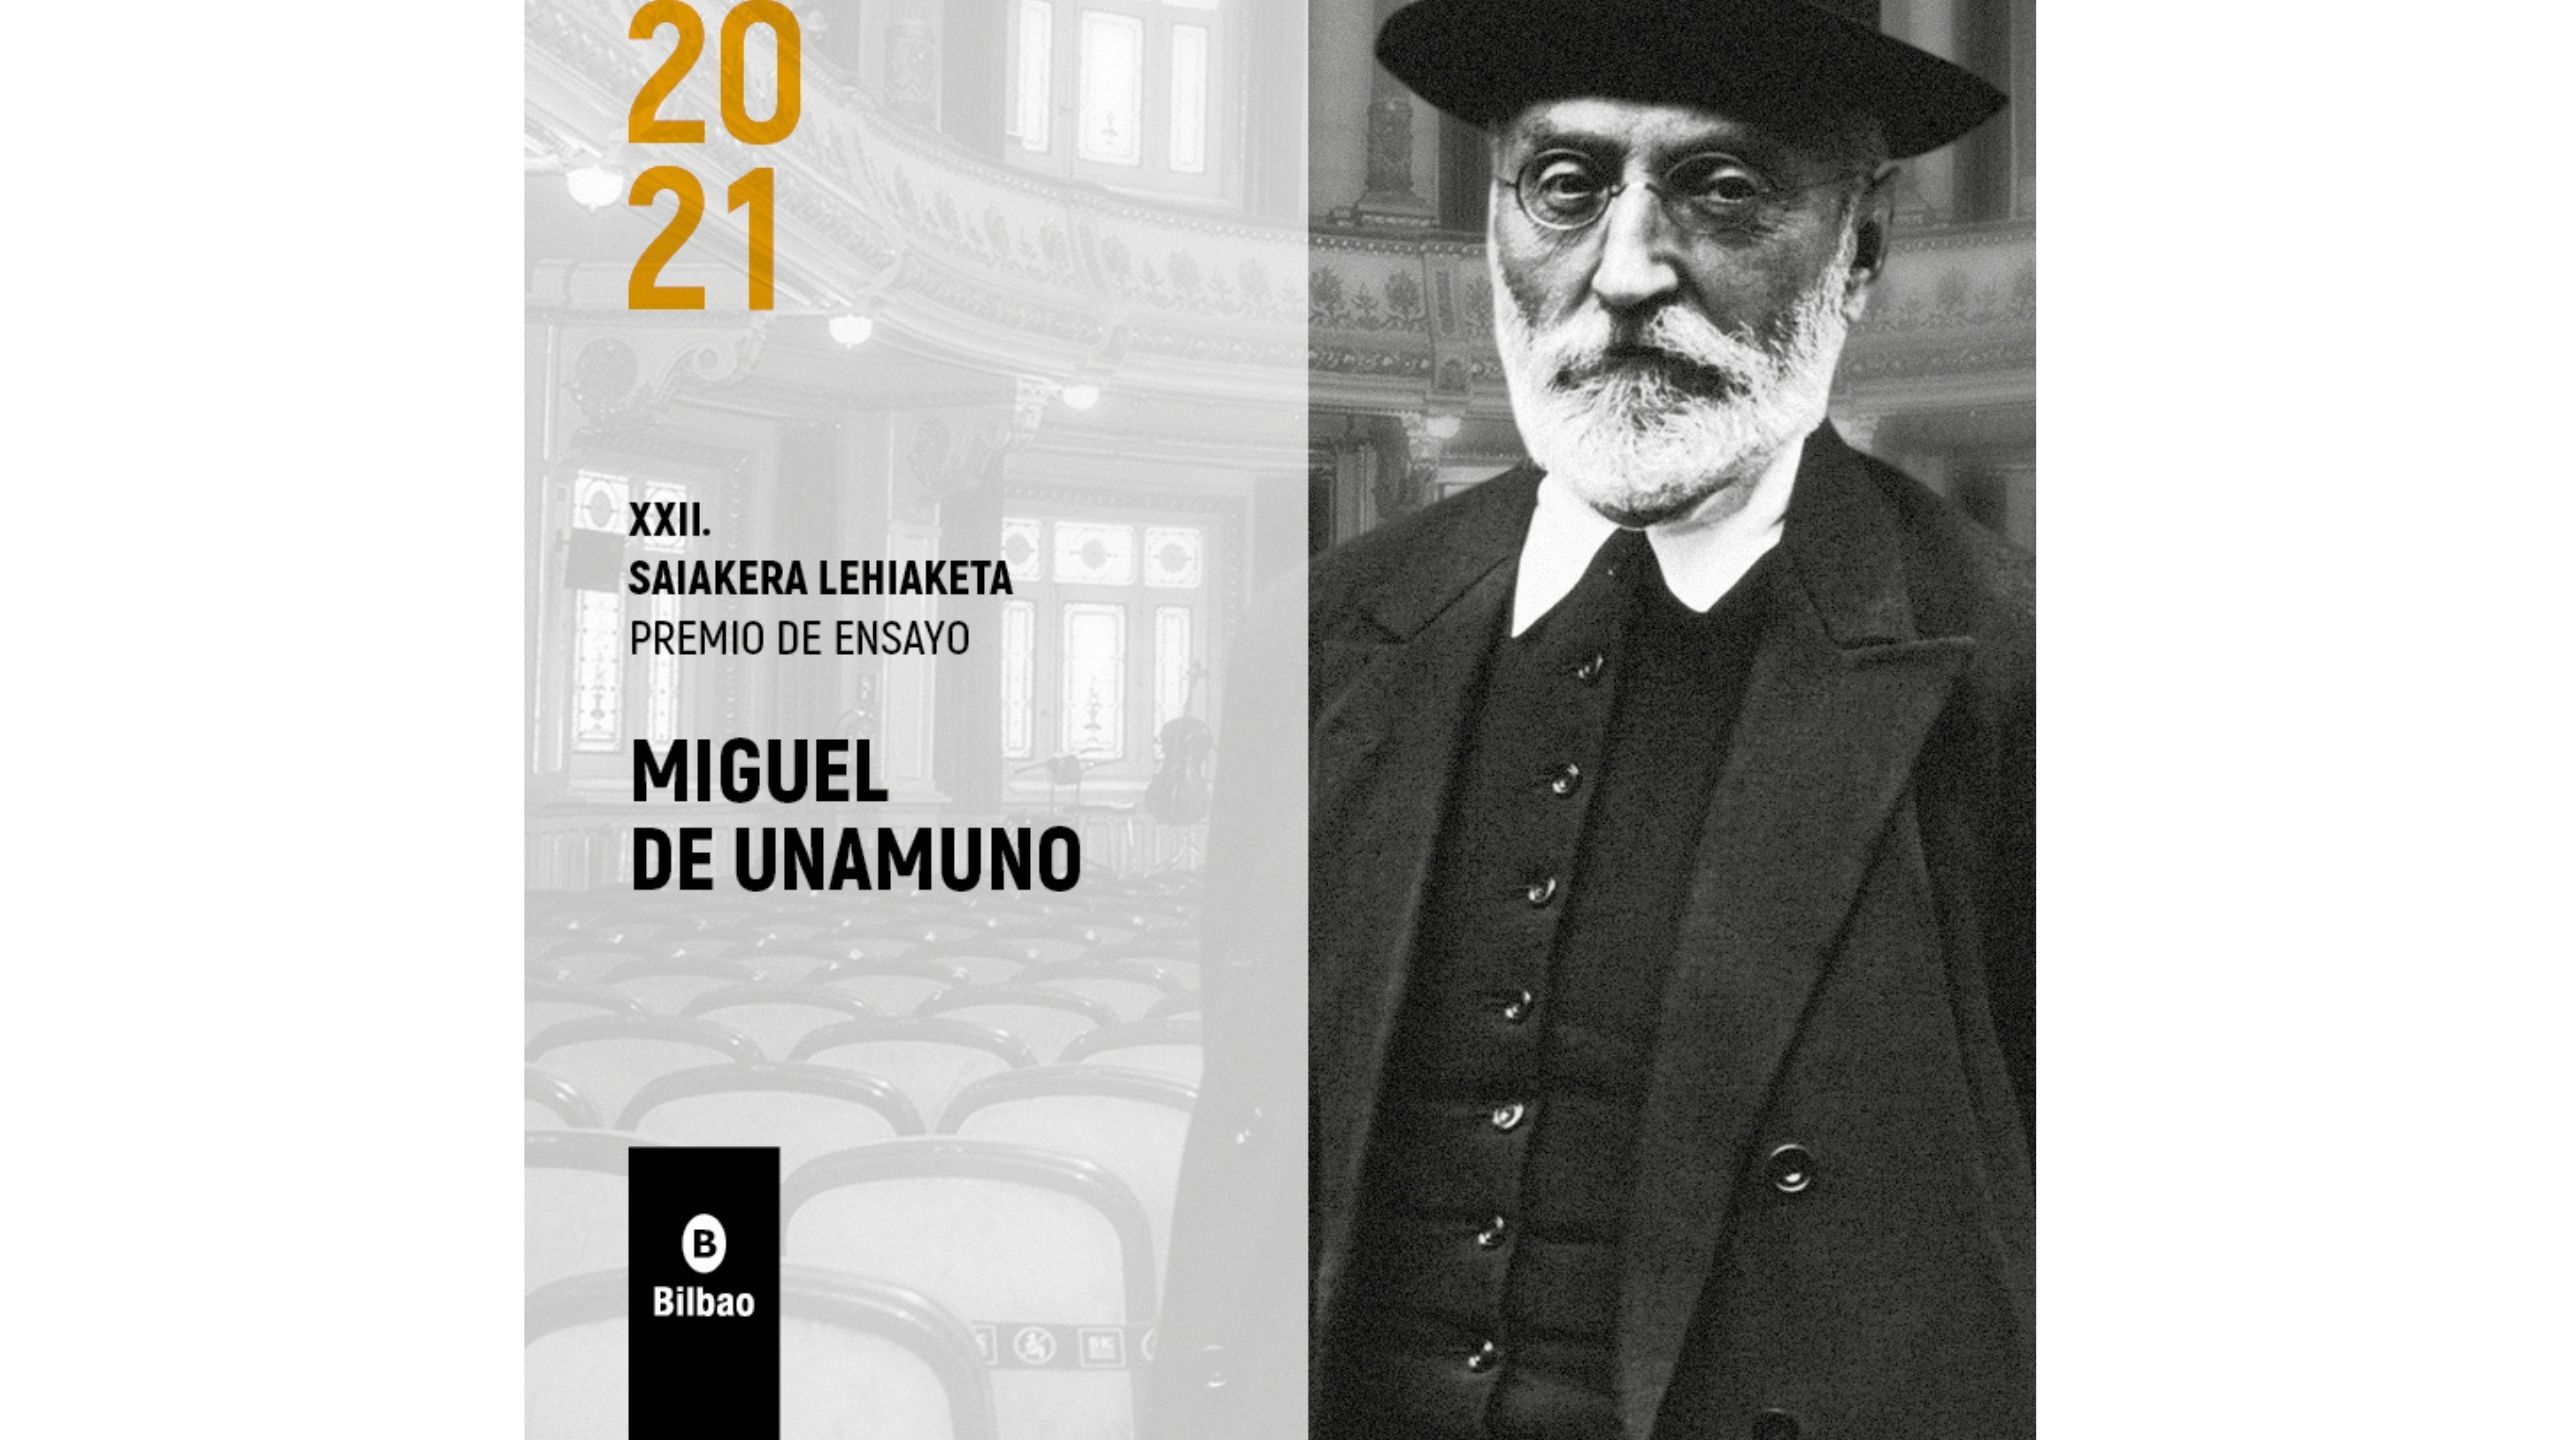 El Ayuntamiento de Bilbao presenta la XXII edición del Premio Ensayo Miguel de Unamuno